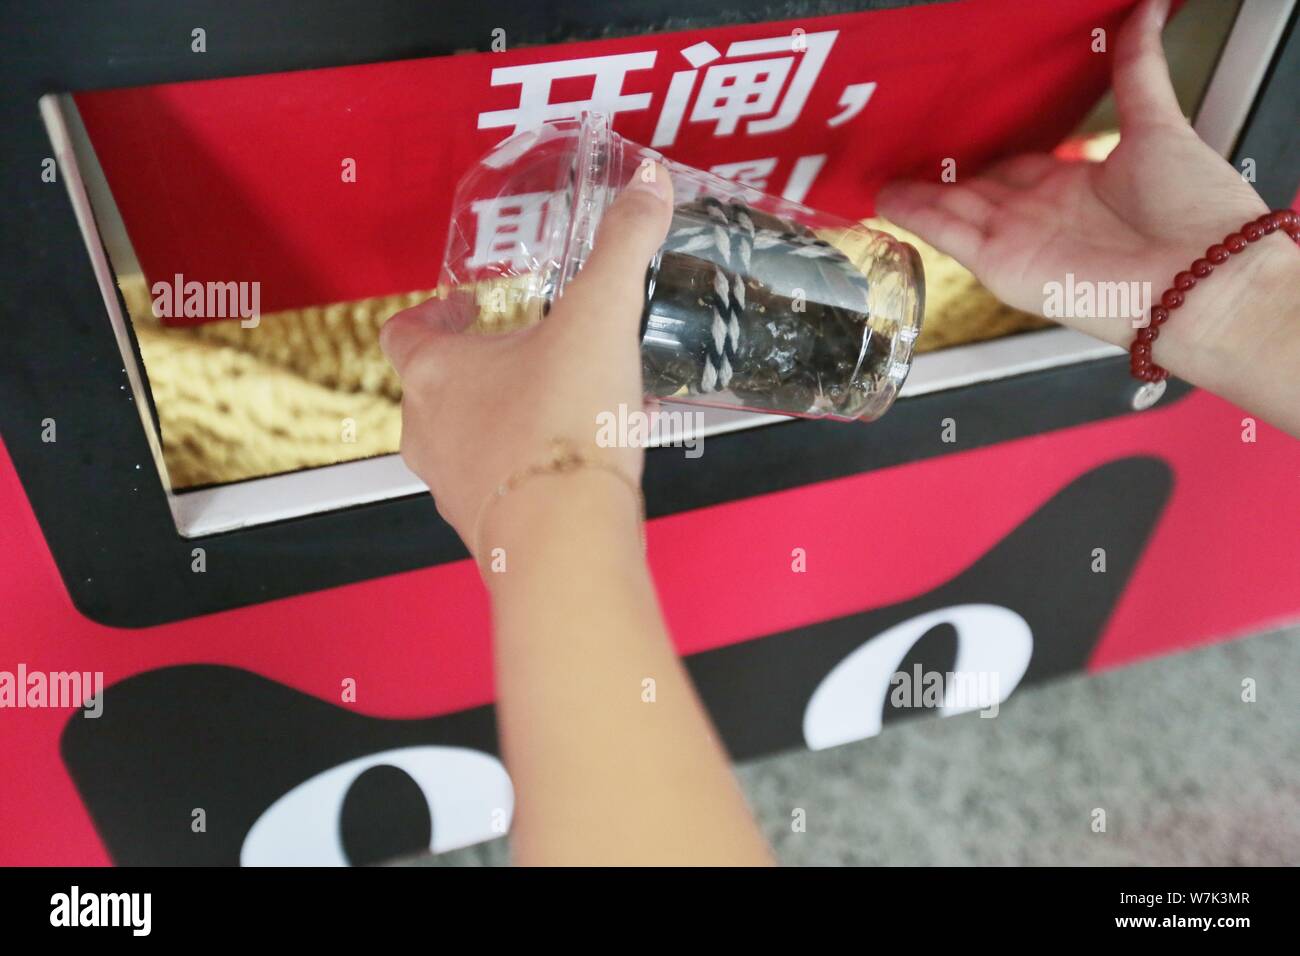 Un client chinois obtient un crabe poilu d'un distributeur automatique au siège de Yiguo nourriture fraîche, un Alibaba de secours plate-forme e-commerce qui vend Banque D'Images